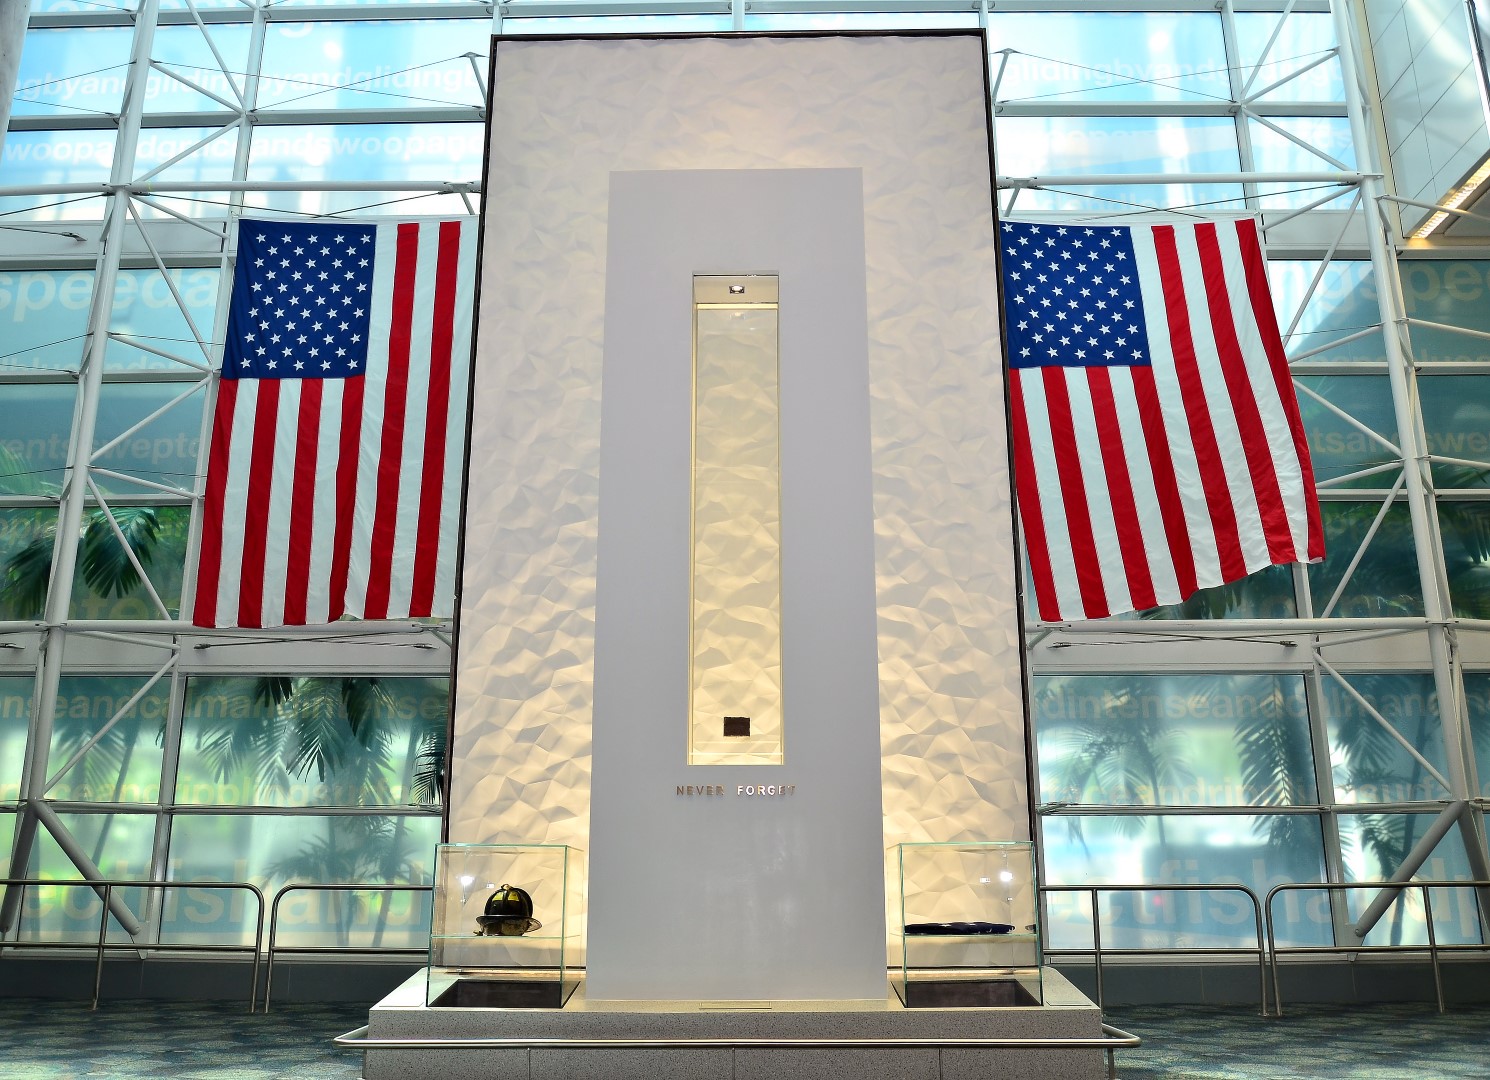 FLL's permanent September 11, 2001 Memorial monument